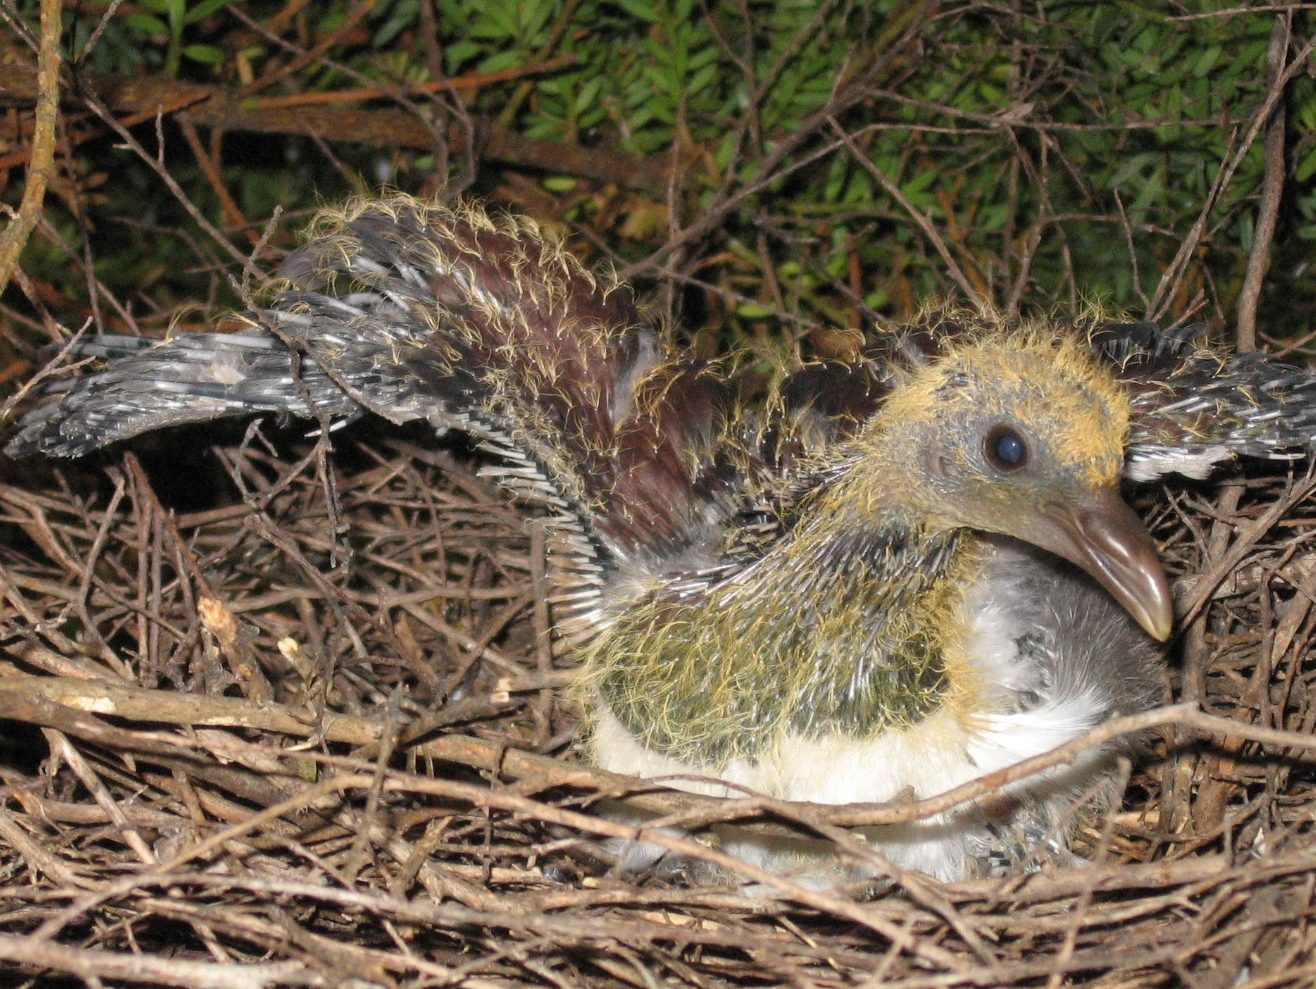 A newly hatched Kereru chick